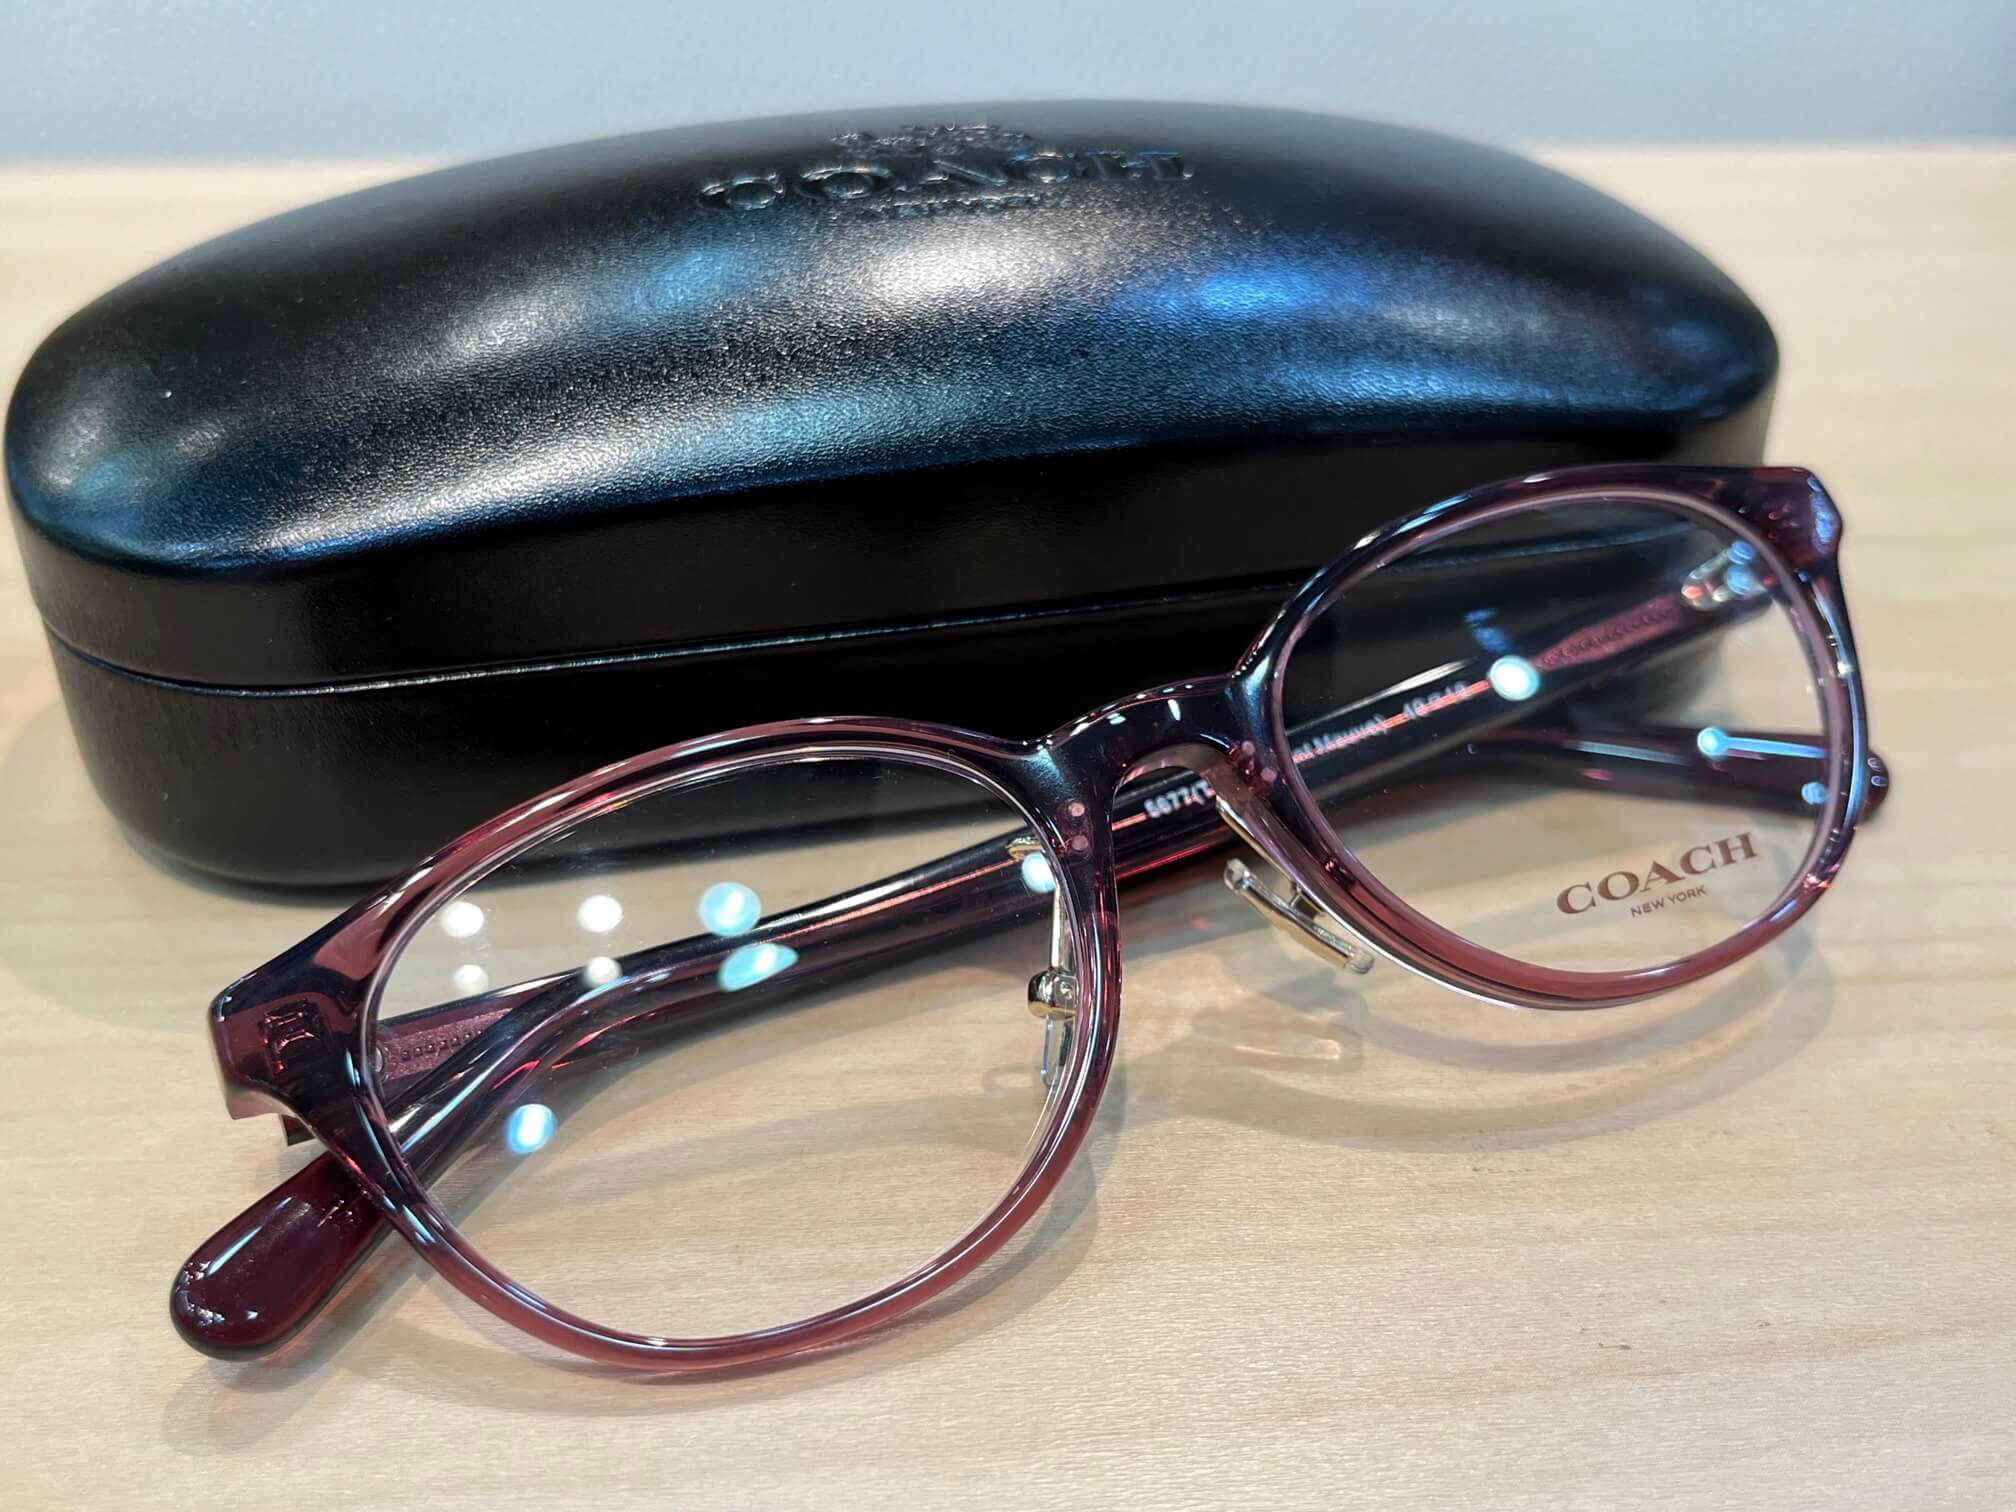 コーチHC6152Dクラッシック感ありの丸型秋色メガネです。